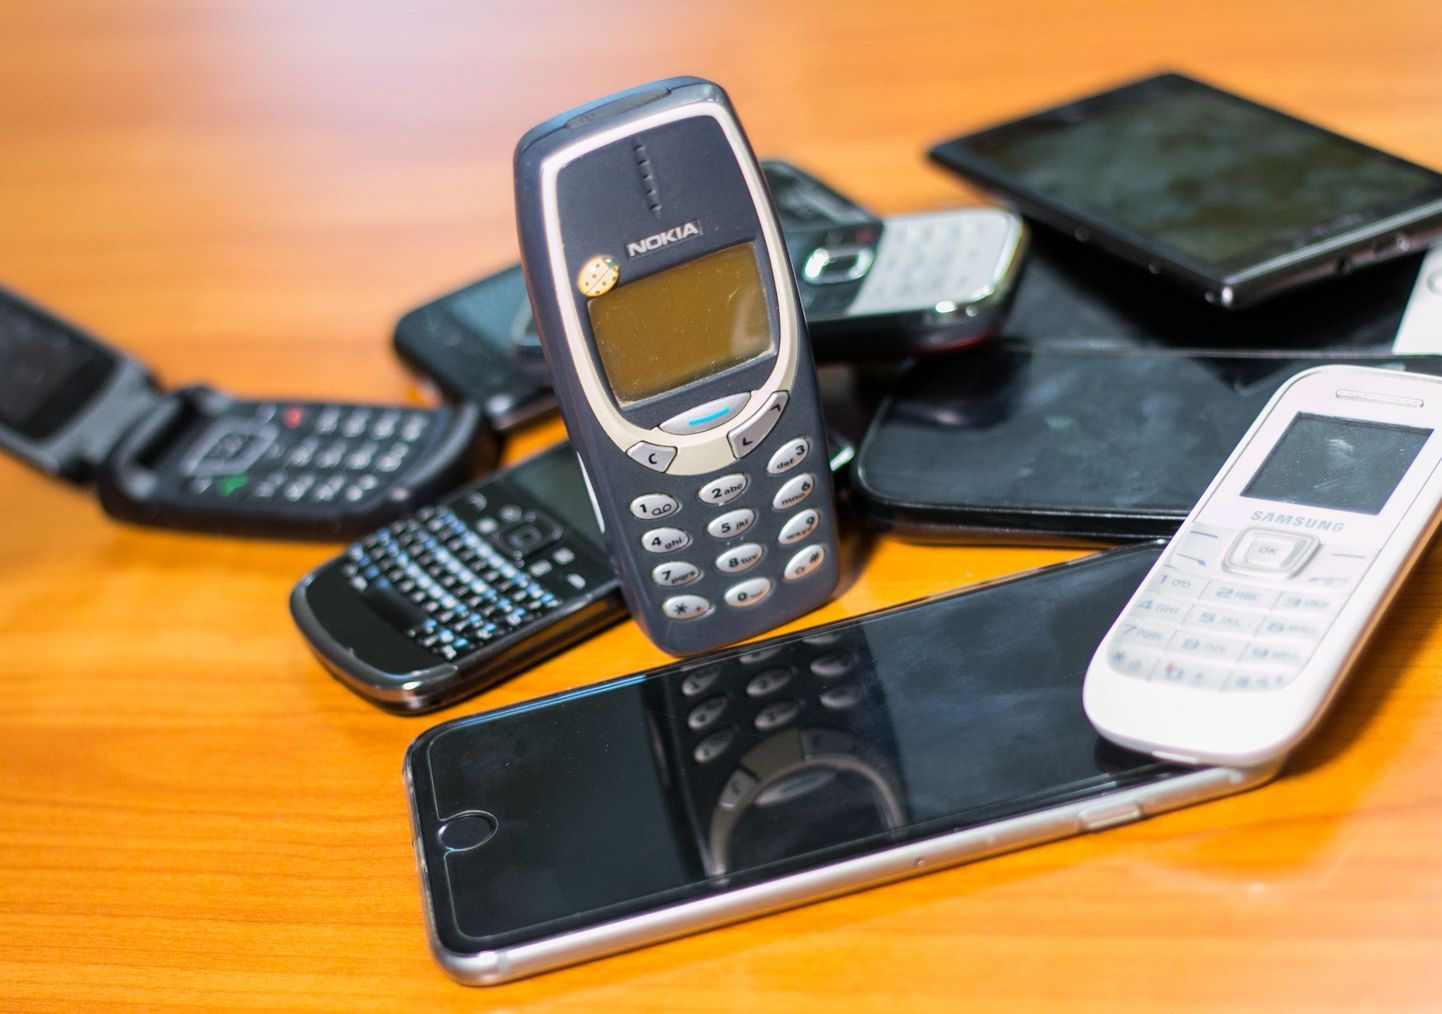 Nutitelefon, telefon, mobiiltelefon
Nuppudega Nokia 3210